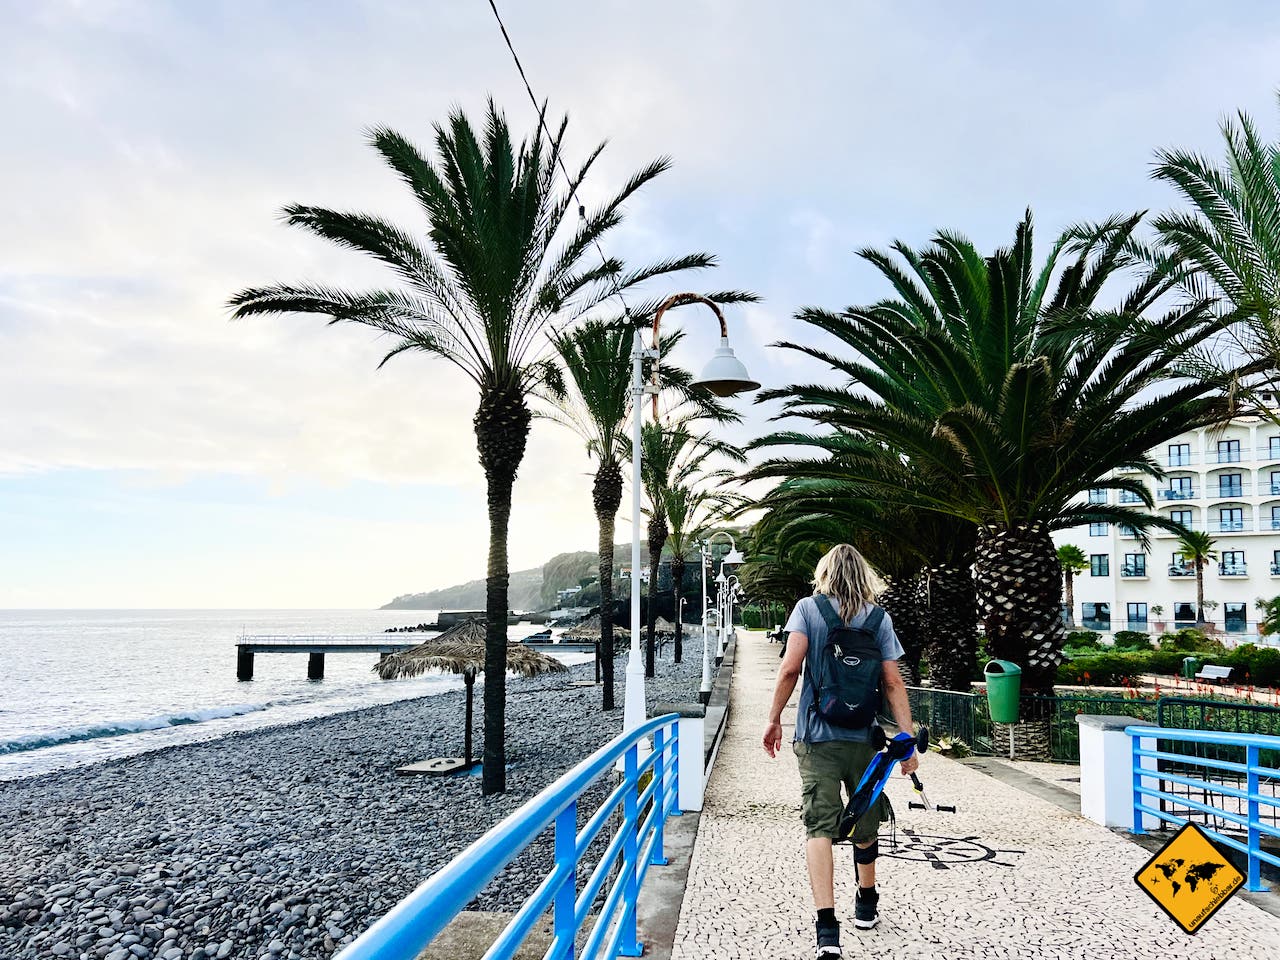 Madeira Praia Santa Cruz Promenade